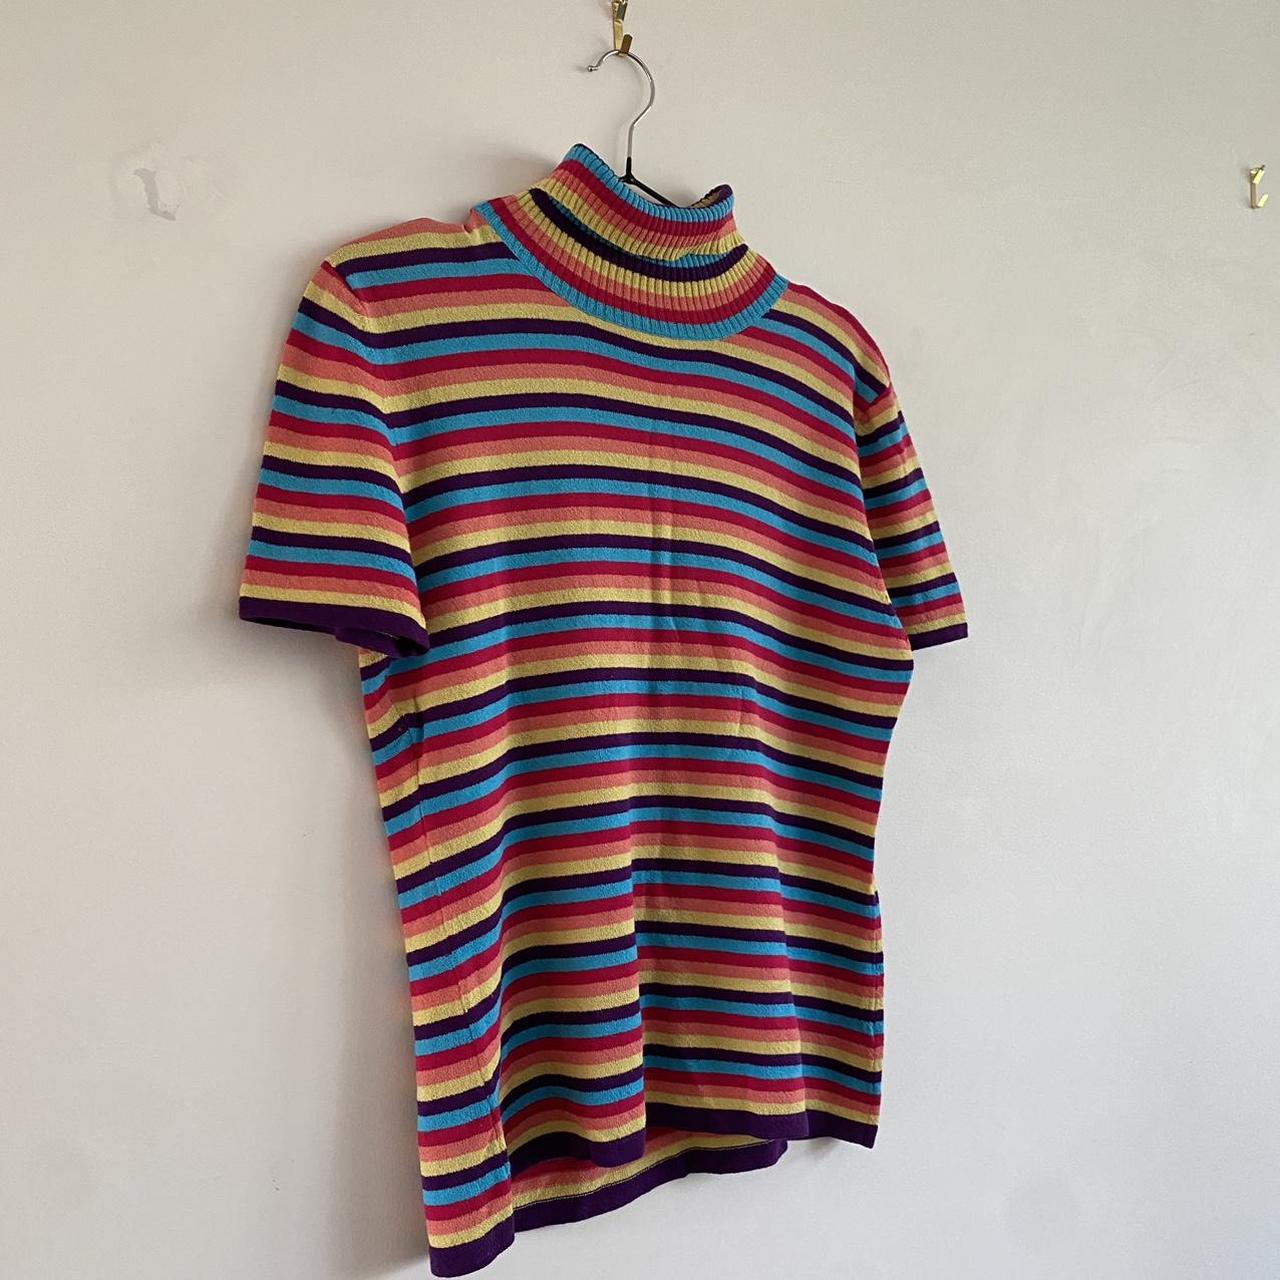 Rainbow, turtle neck shirt. Size large 🌈 - Depop